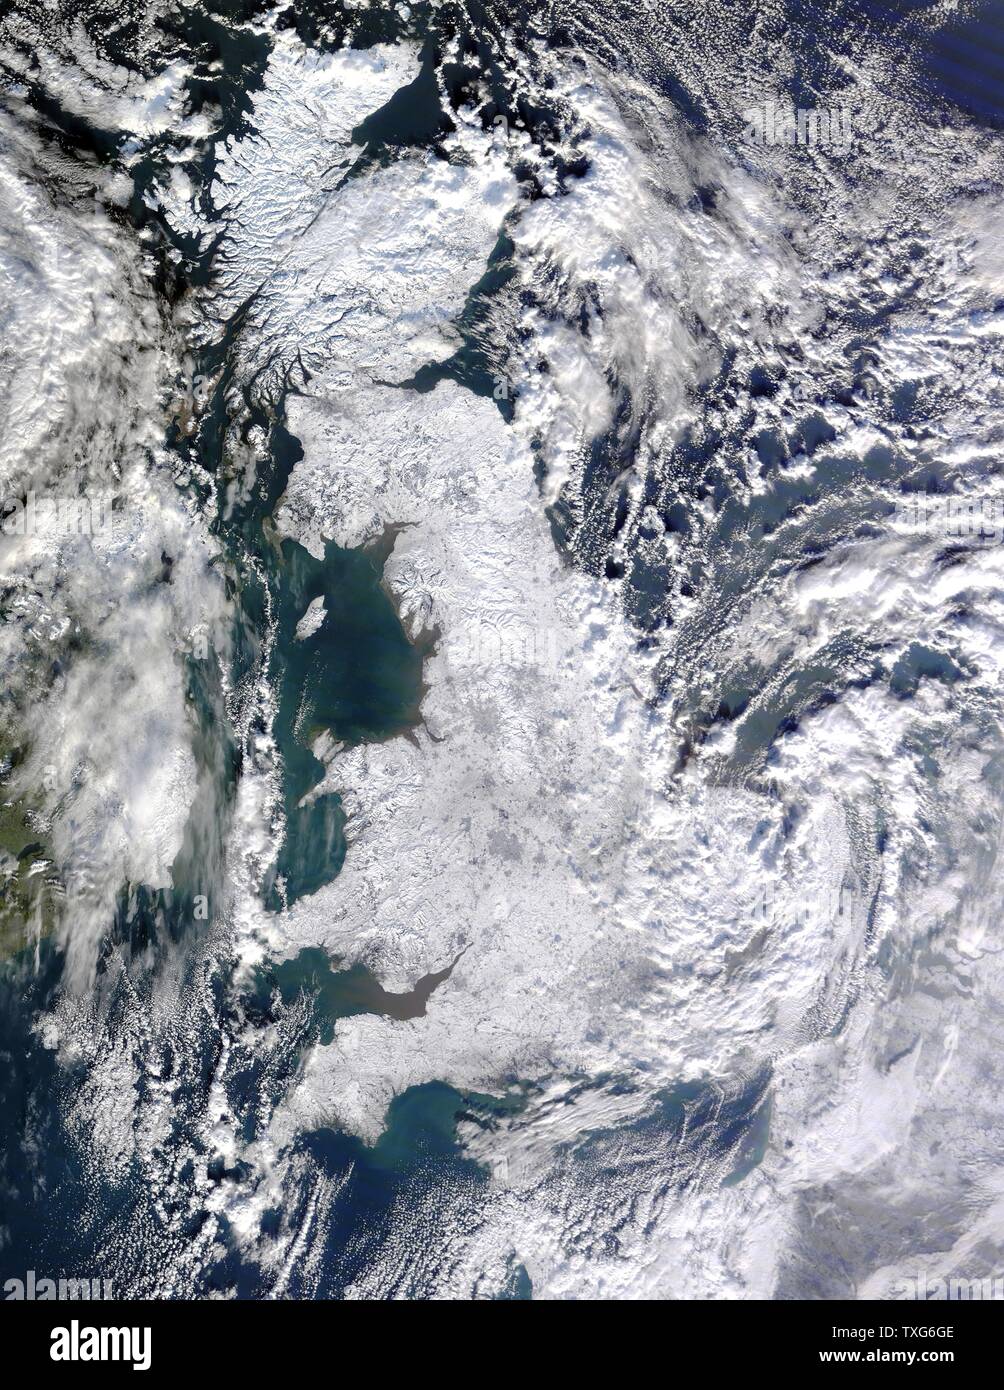 Royaume-uni de Grande-Bretagne sous une couverture de neige photographie par satellite Banque D'Images